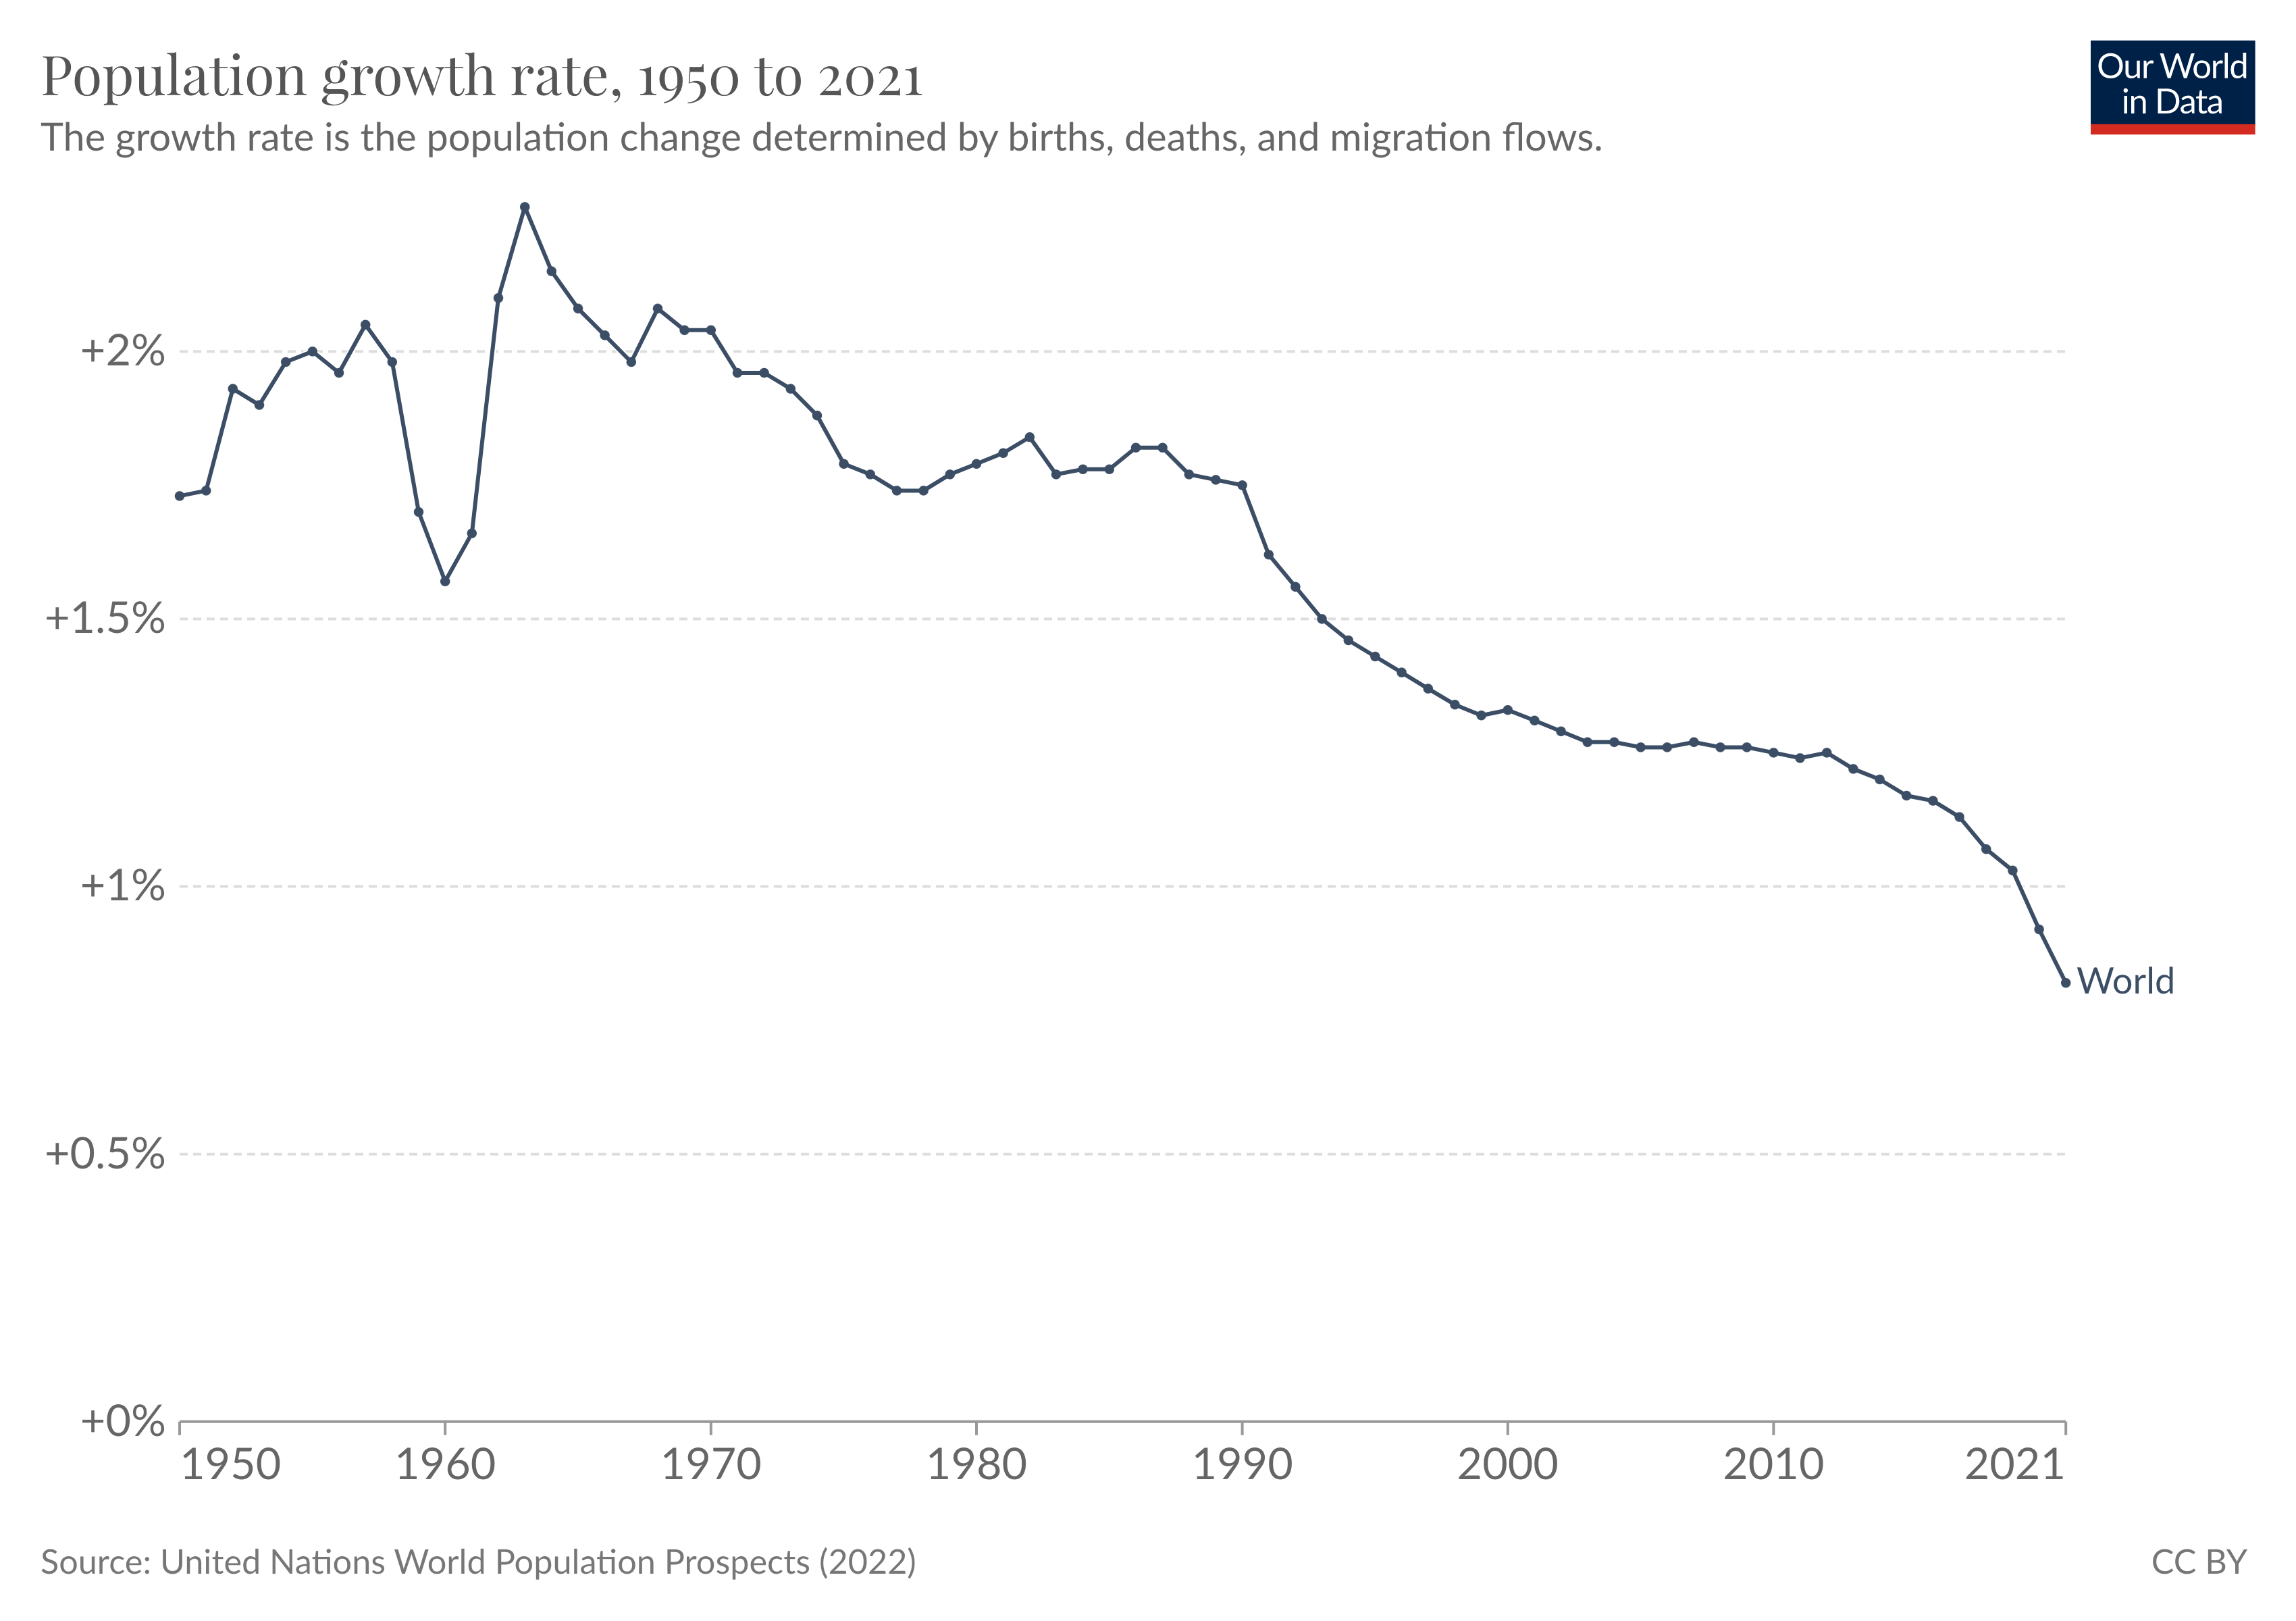 evolución de la tasa de crecimiento de la población mundial